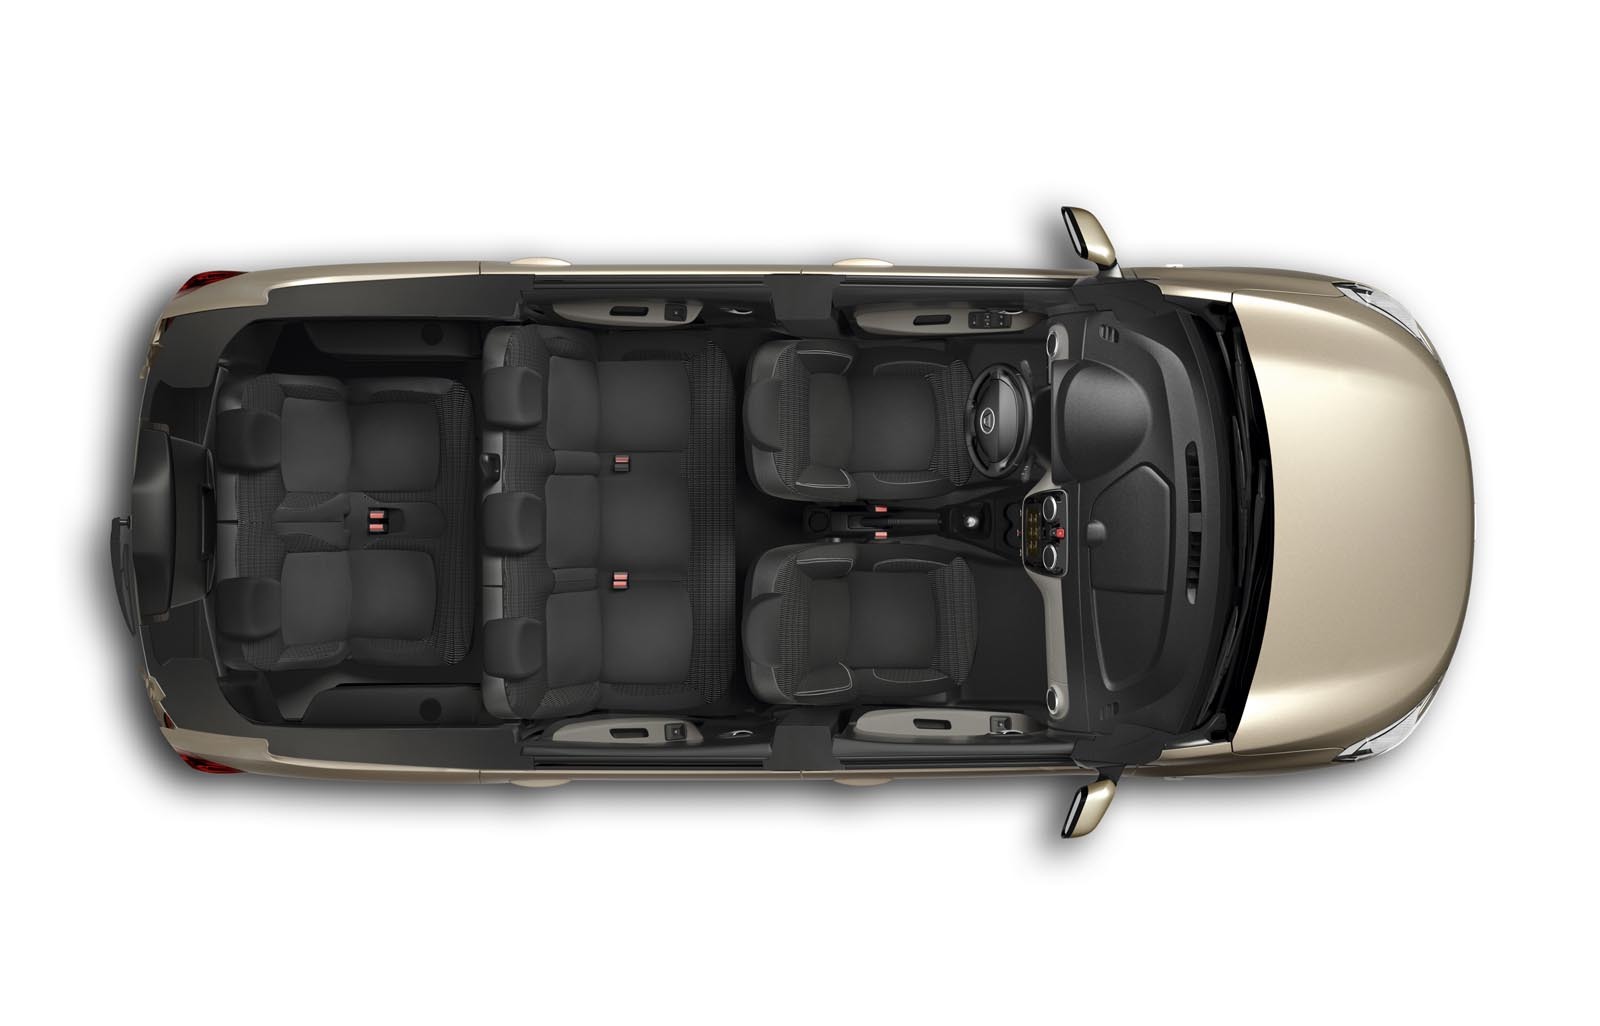 Dacia Lodgy ofera cel mai bun raport din segmentul sau intre gabaritul exterior si spatiul util interior